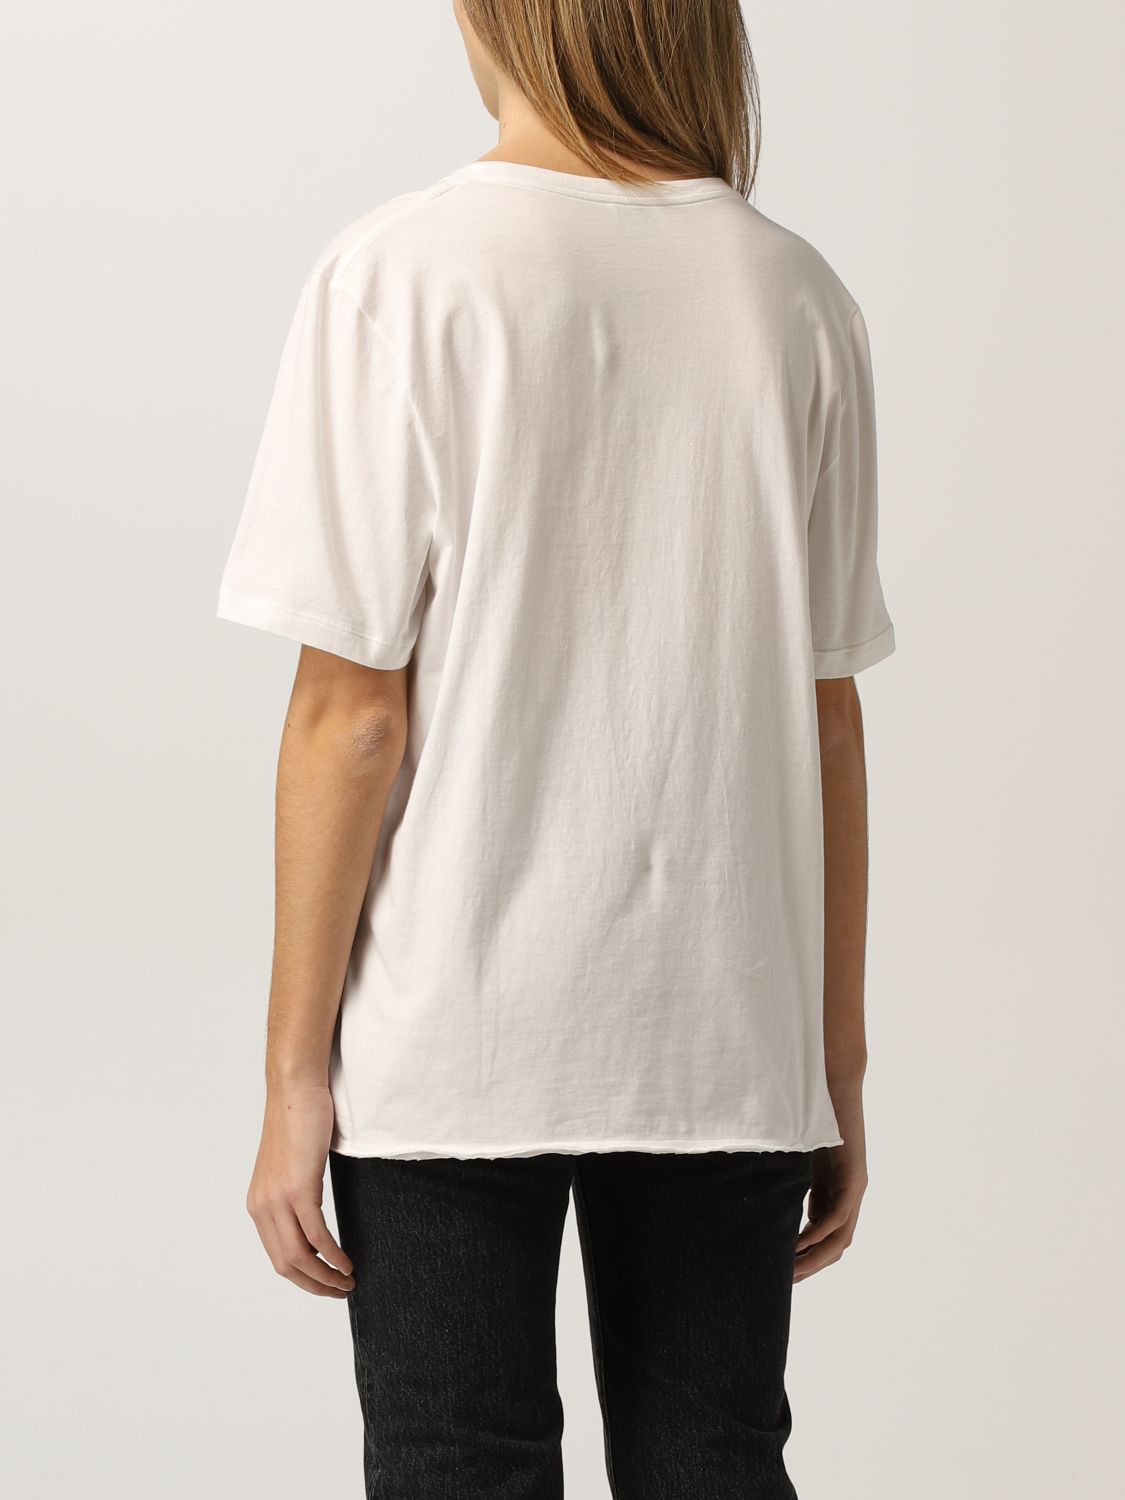 T-Shirt Saint Laurent: Saint Laurent cotton t-shirt with print yellow cream 2